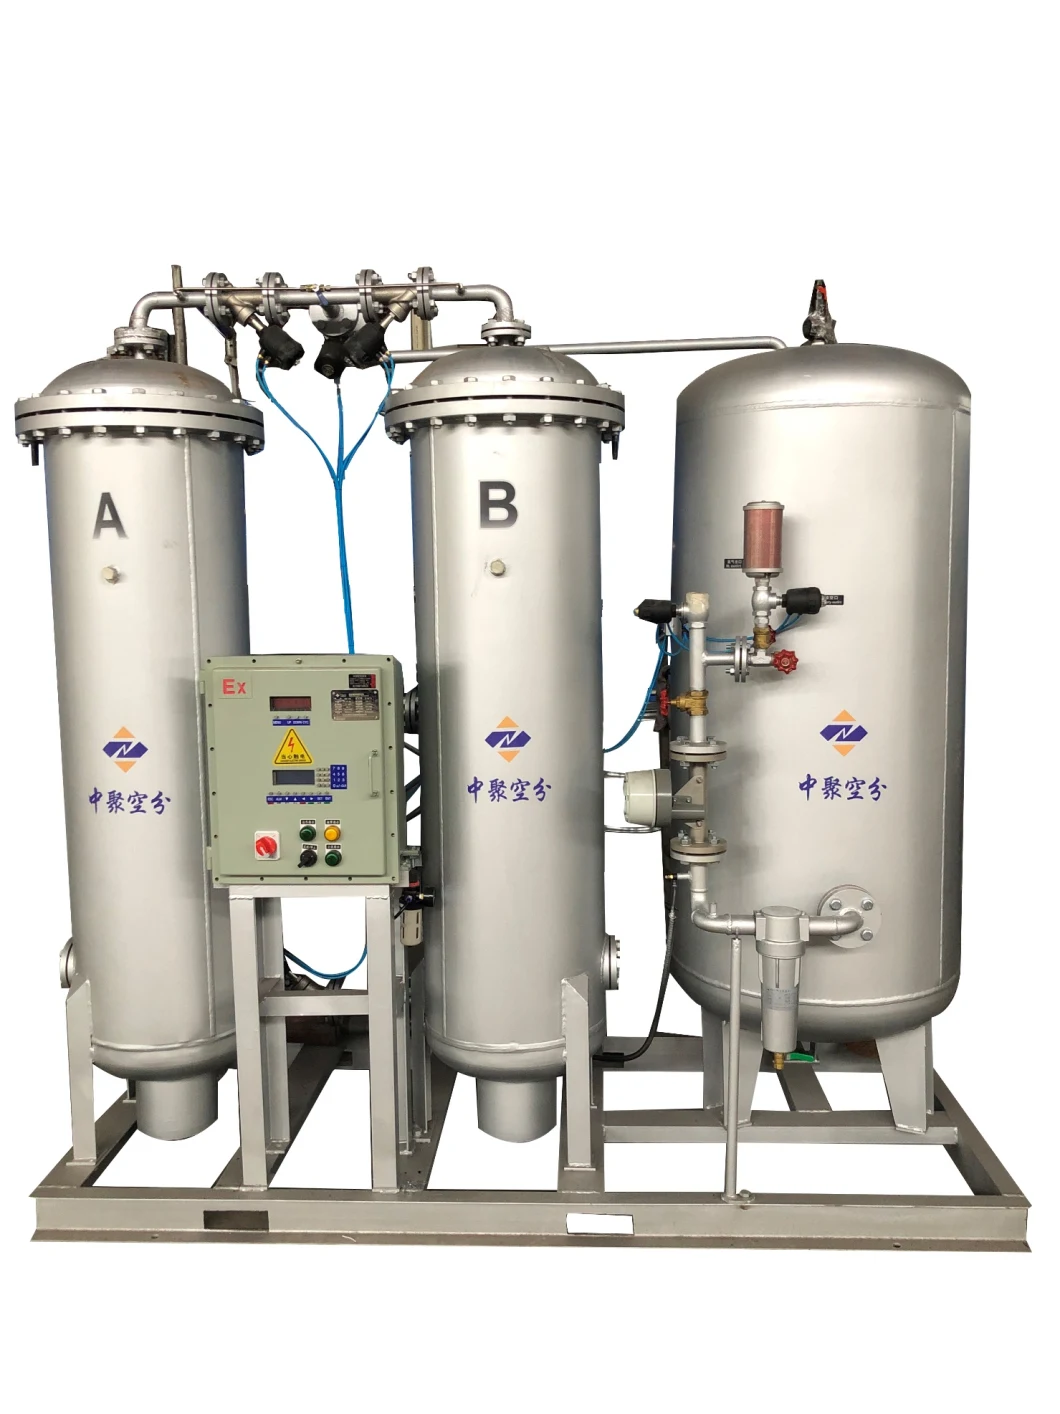 Generador de nitrógeno de suministro directo de fábrica Equipo generador de nitrógeno